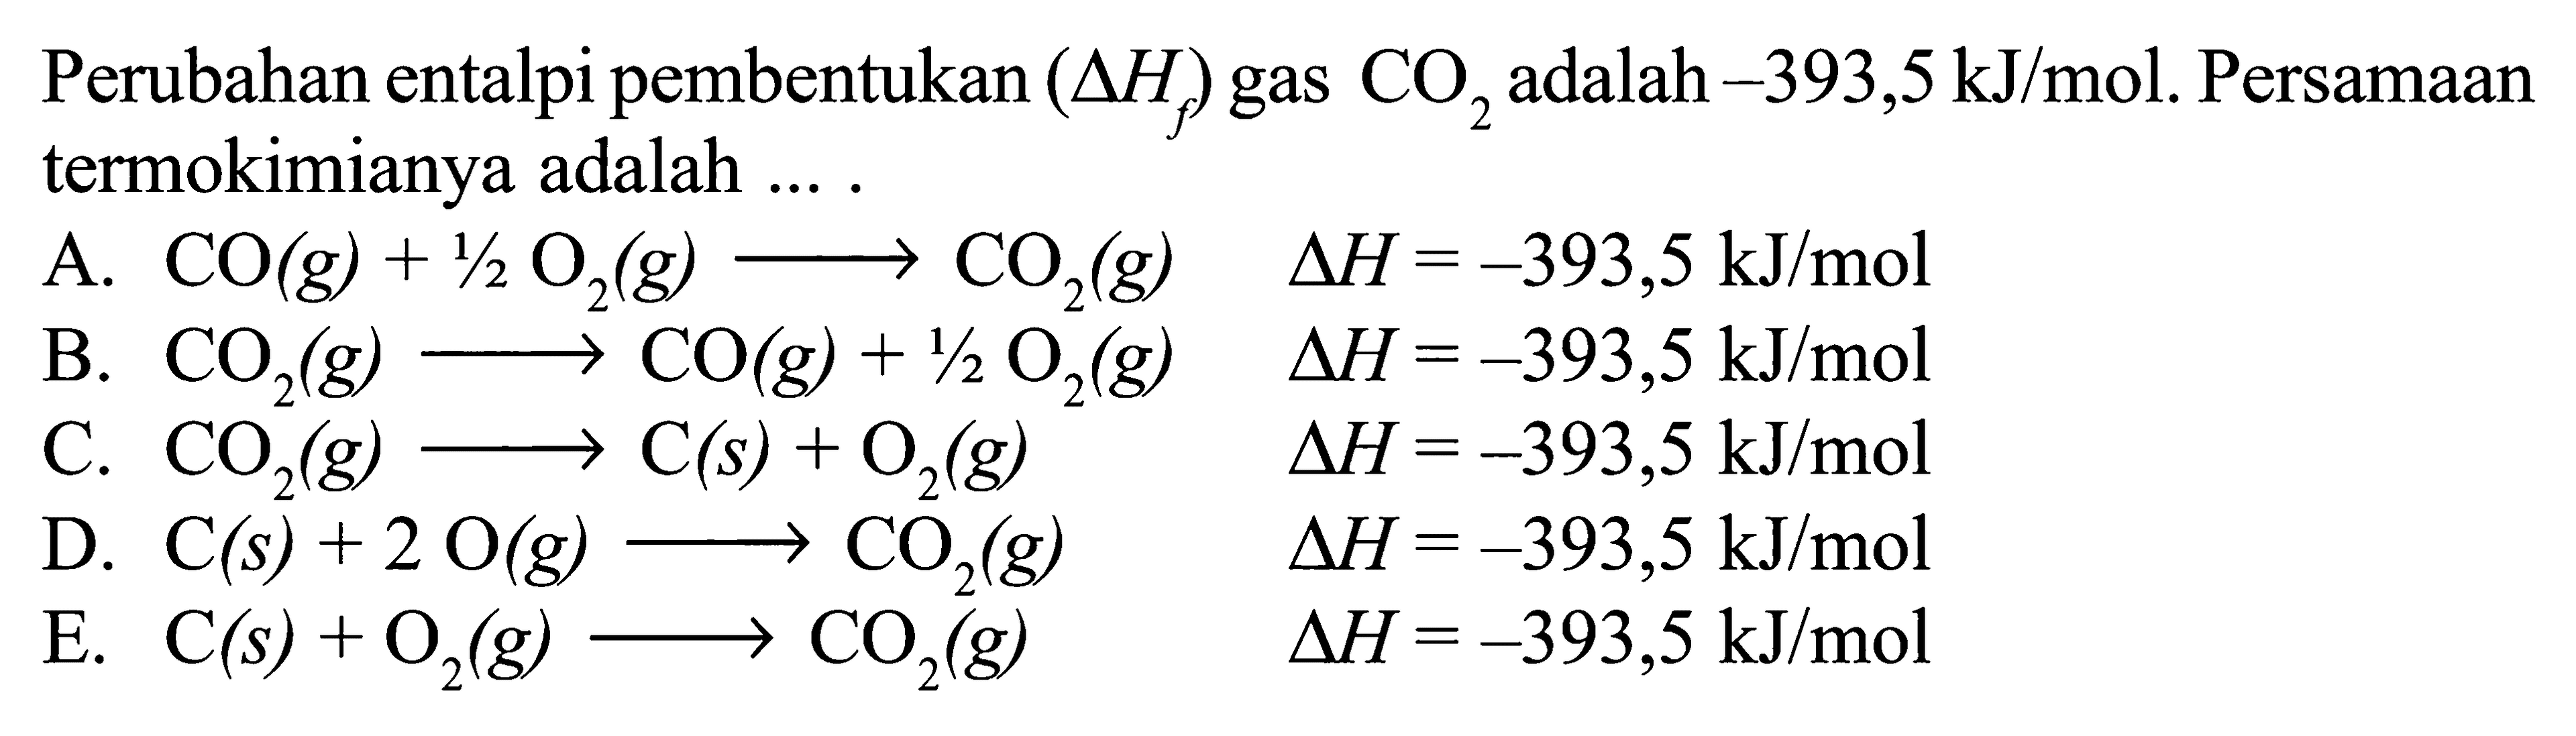 Perubahan entalpi pembentukan (delta Hf ) gas CO2 adalah -393,5 kJ/mol. Persamaan termokimianya adalah ... .